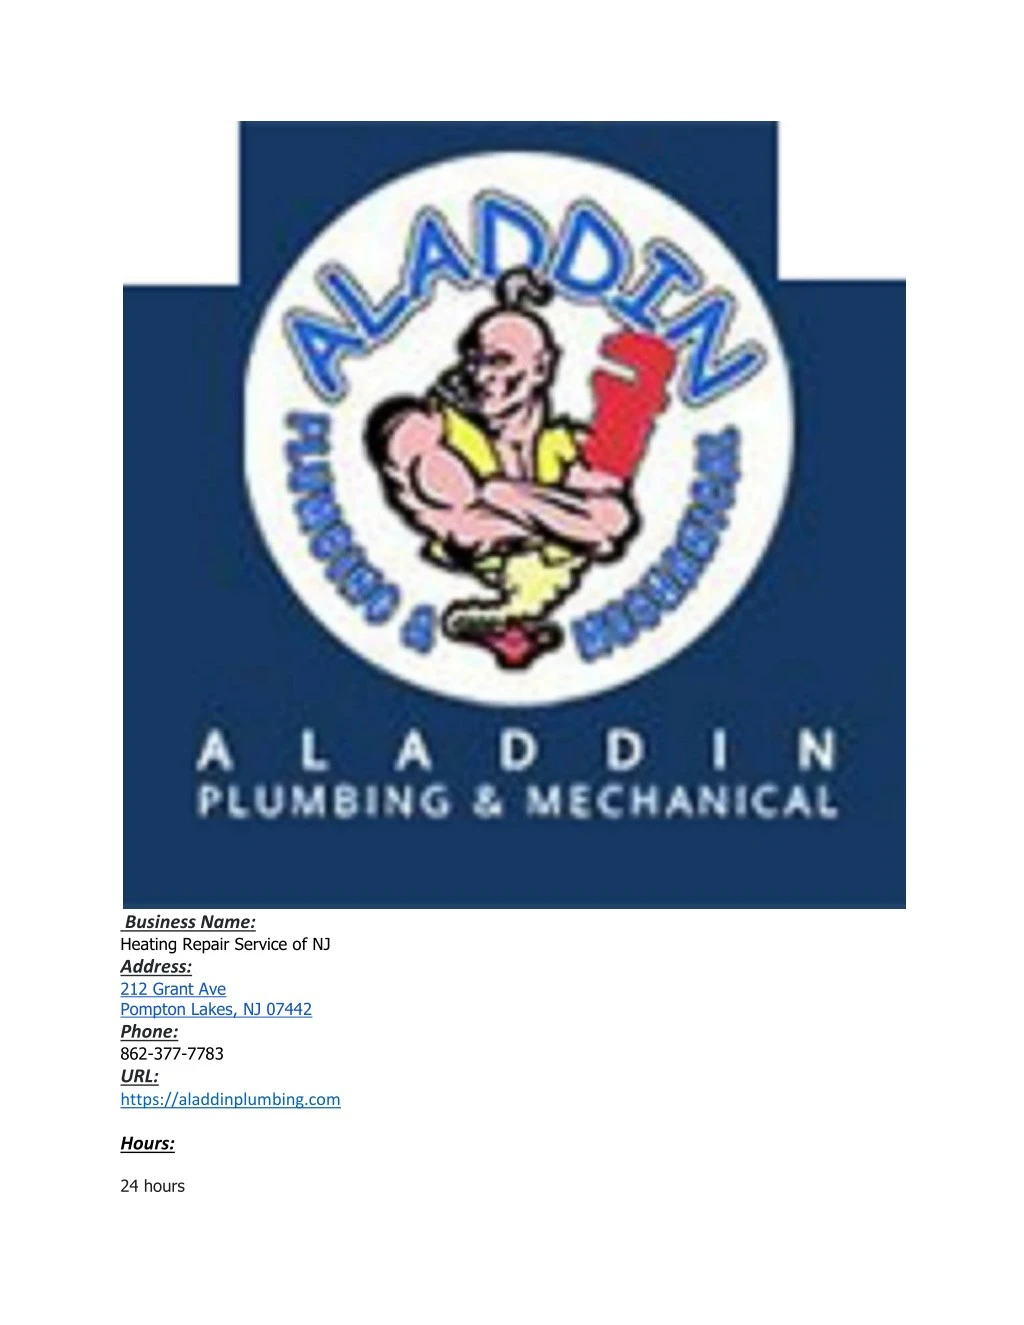 business name heating repair service